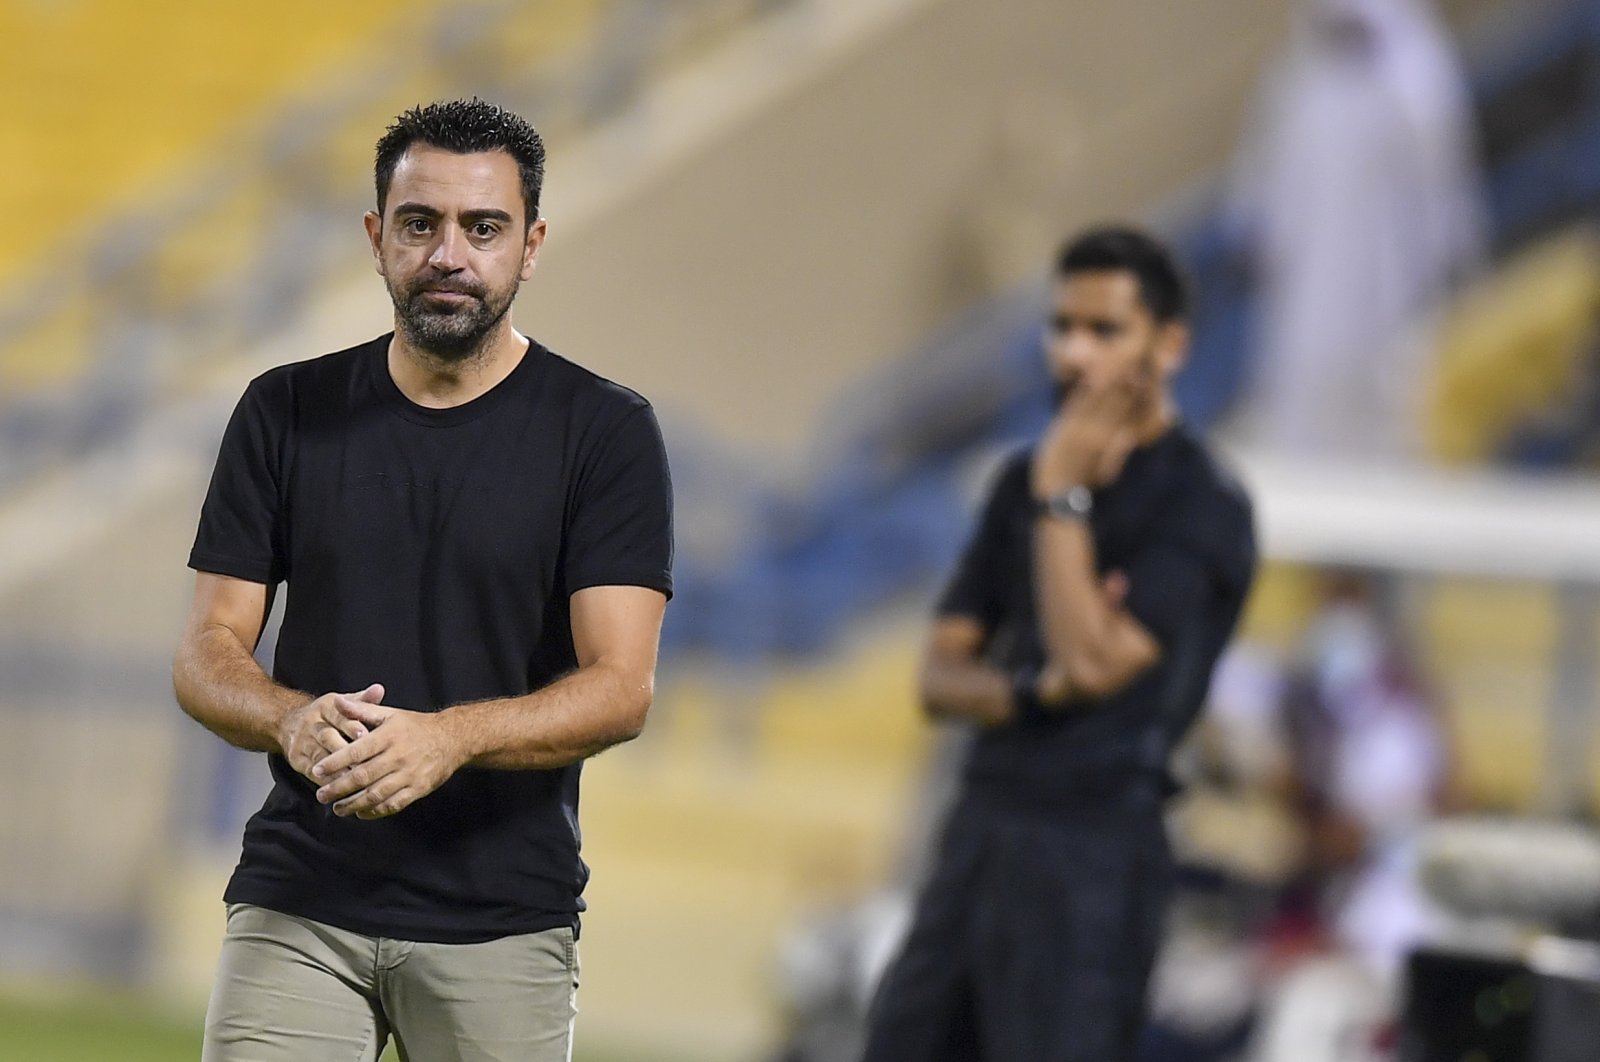 Al-Sadd coach Xavi Hernandez reacts during a Qatar Stars League match against Al Ahli in Doha, Qatar, Oct. 30, 2021. (EPA Photo)